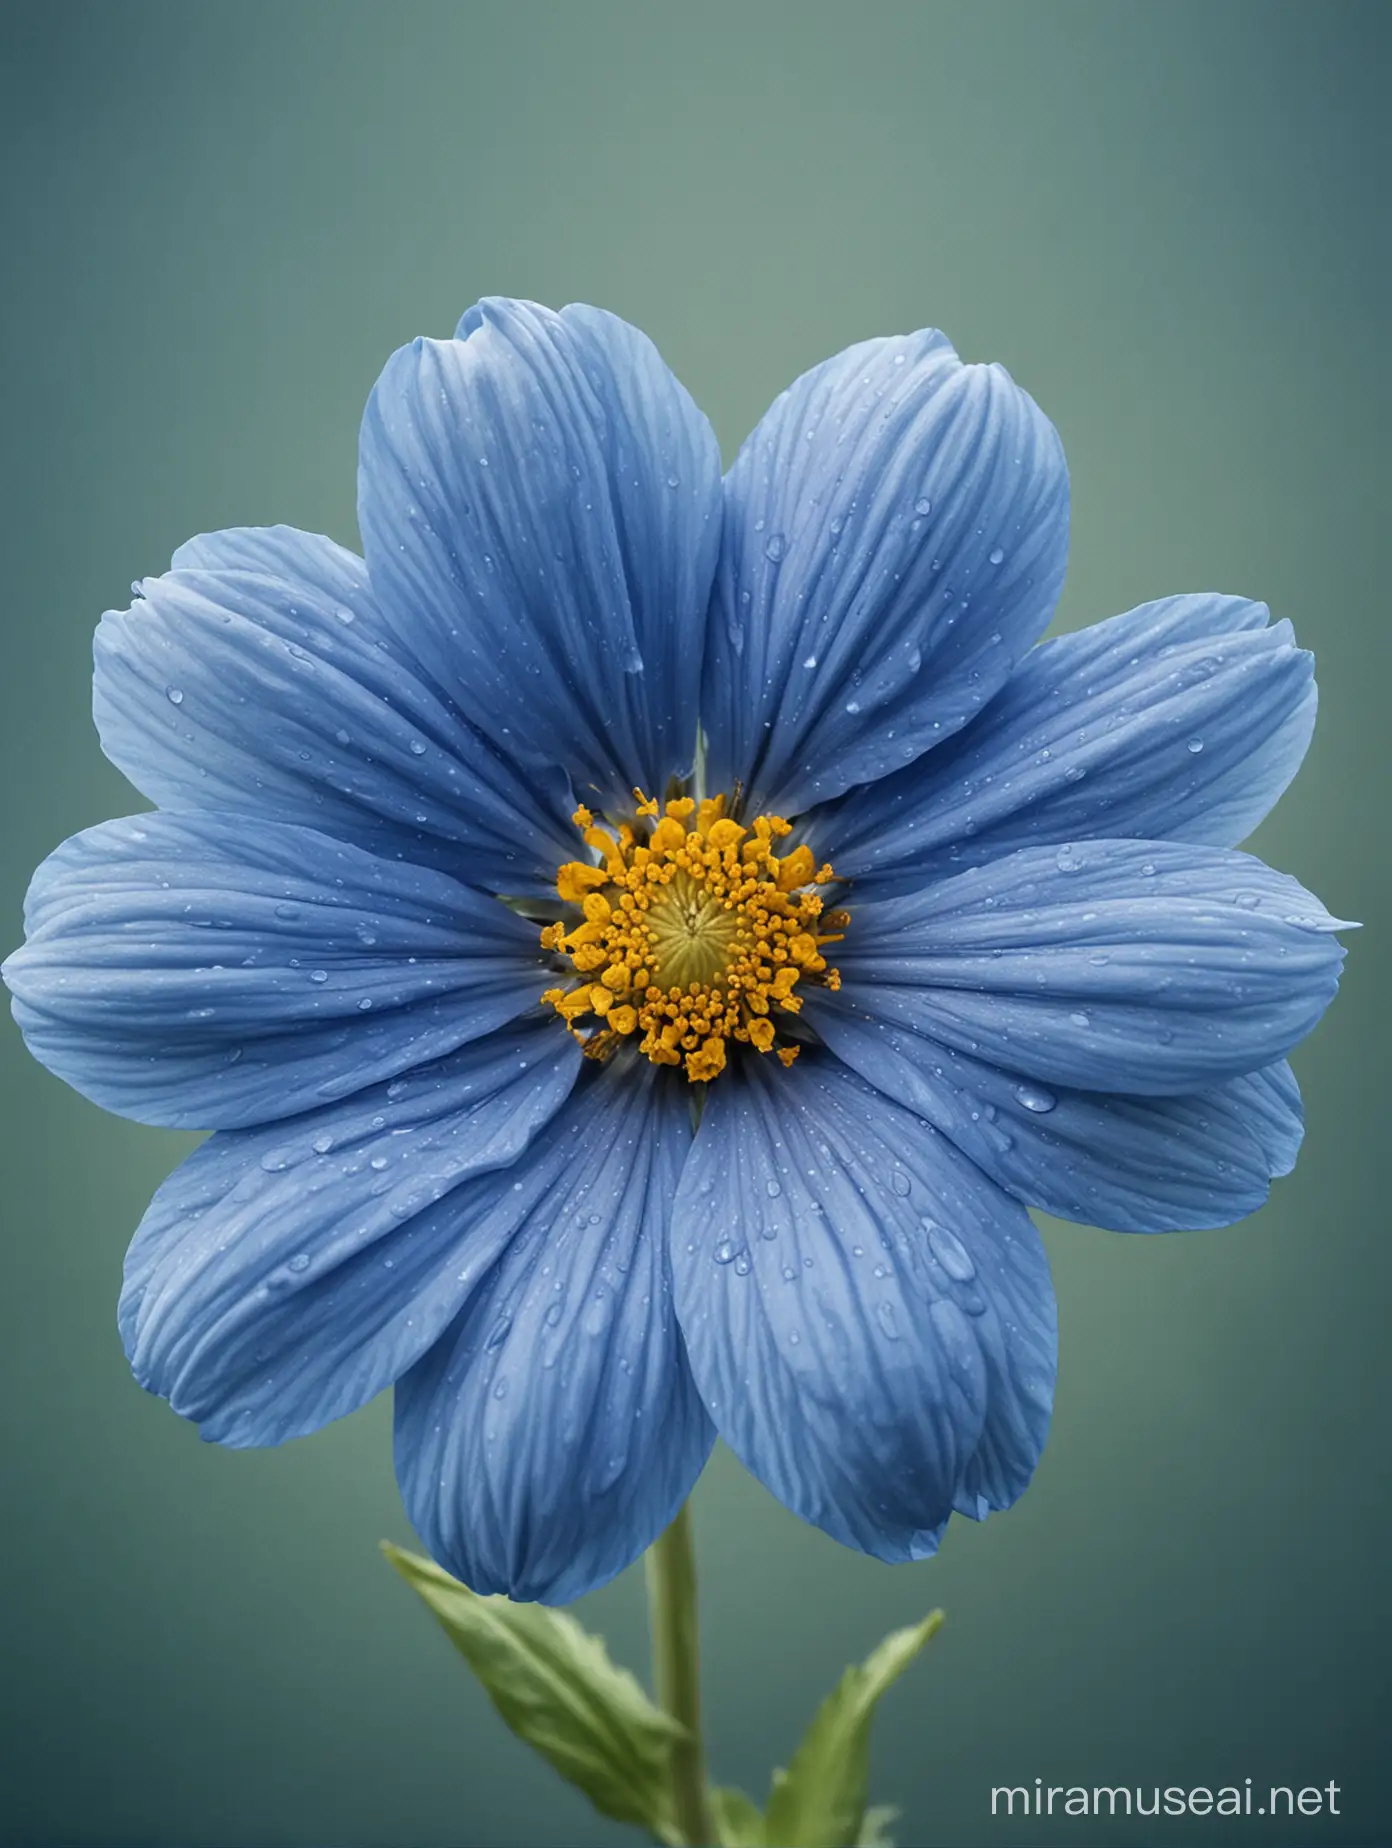 Vibrant Blue Flower Blooming in Sunlight